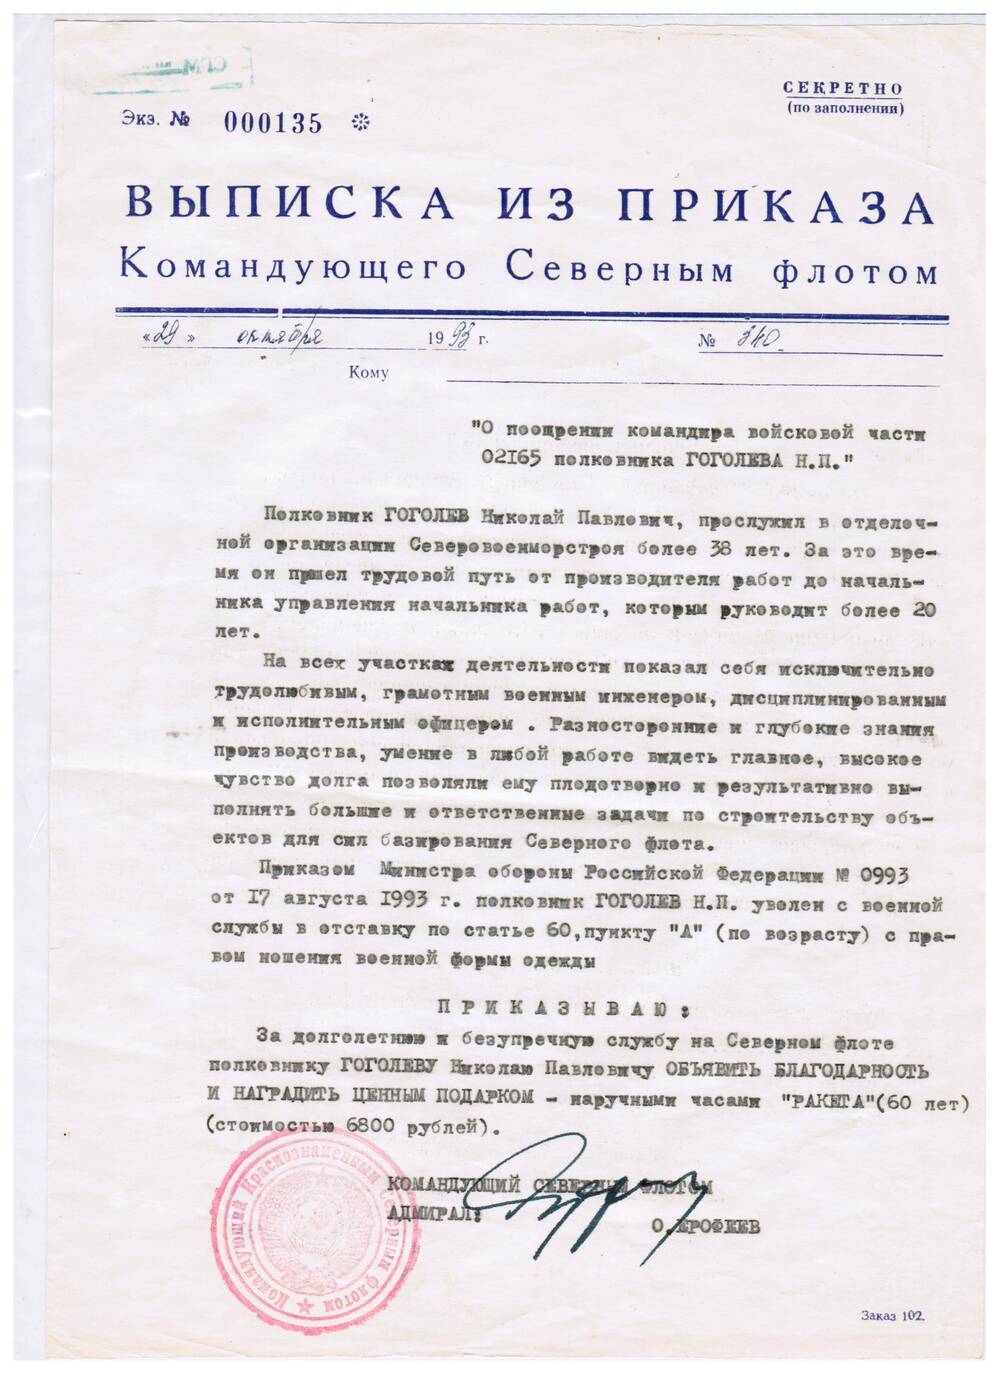 Выписка из приказа №340 от 29.10.1993 г. Командующего СФ О поощрении командира в/ч 02165 полковника Гоголеву Н.П.